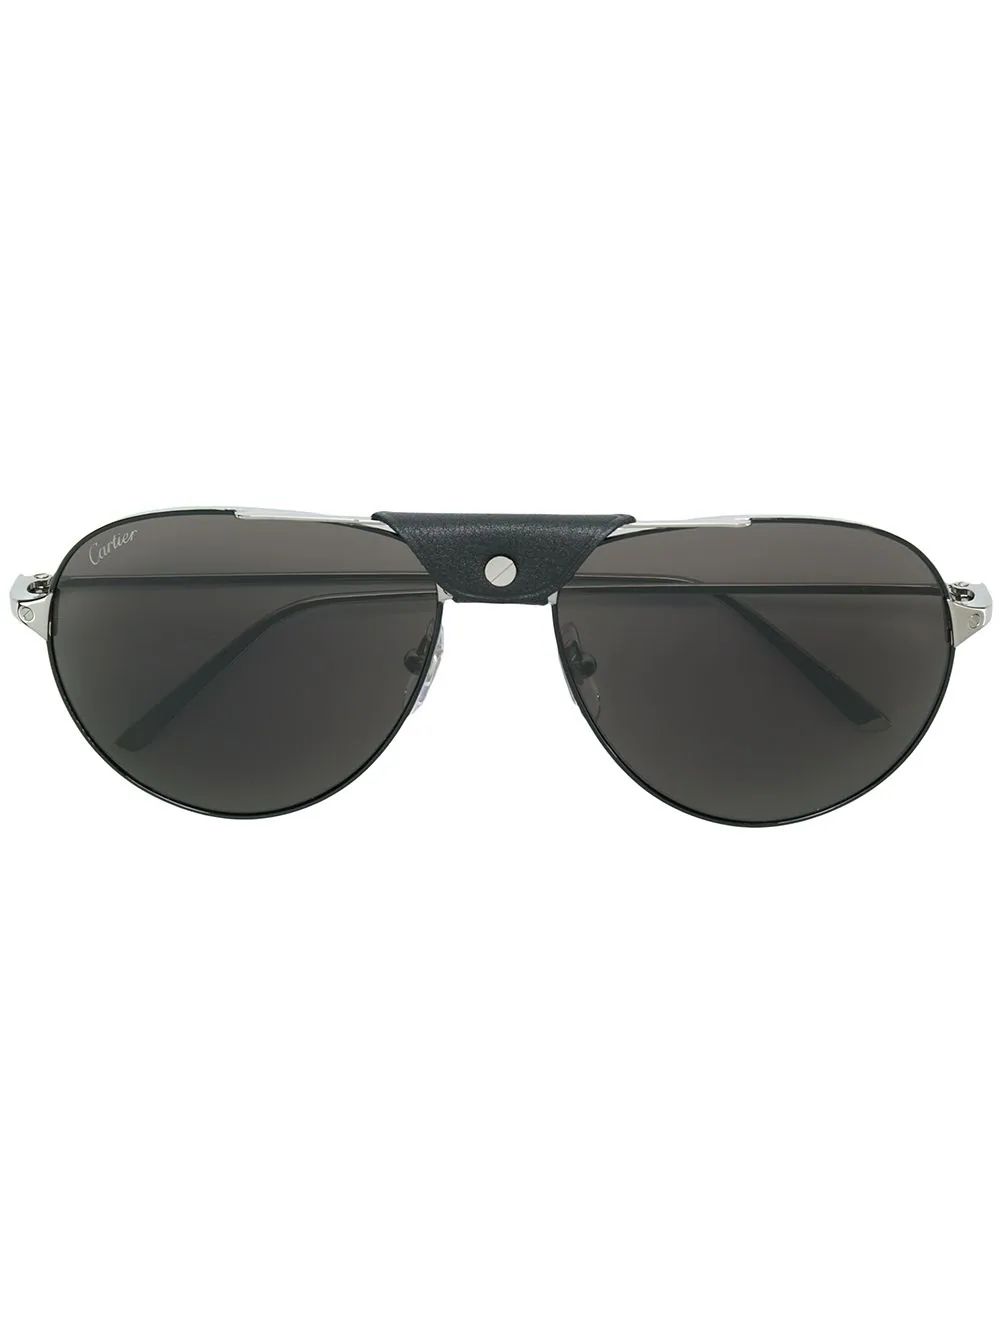 Cartier Santos aviator sunglasses - Black | FarFetch US